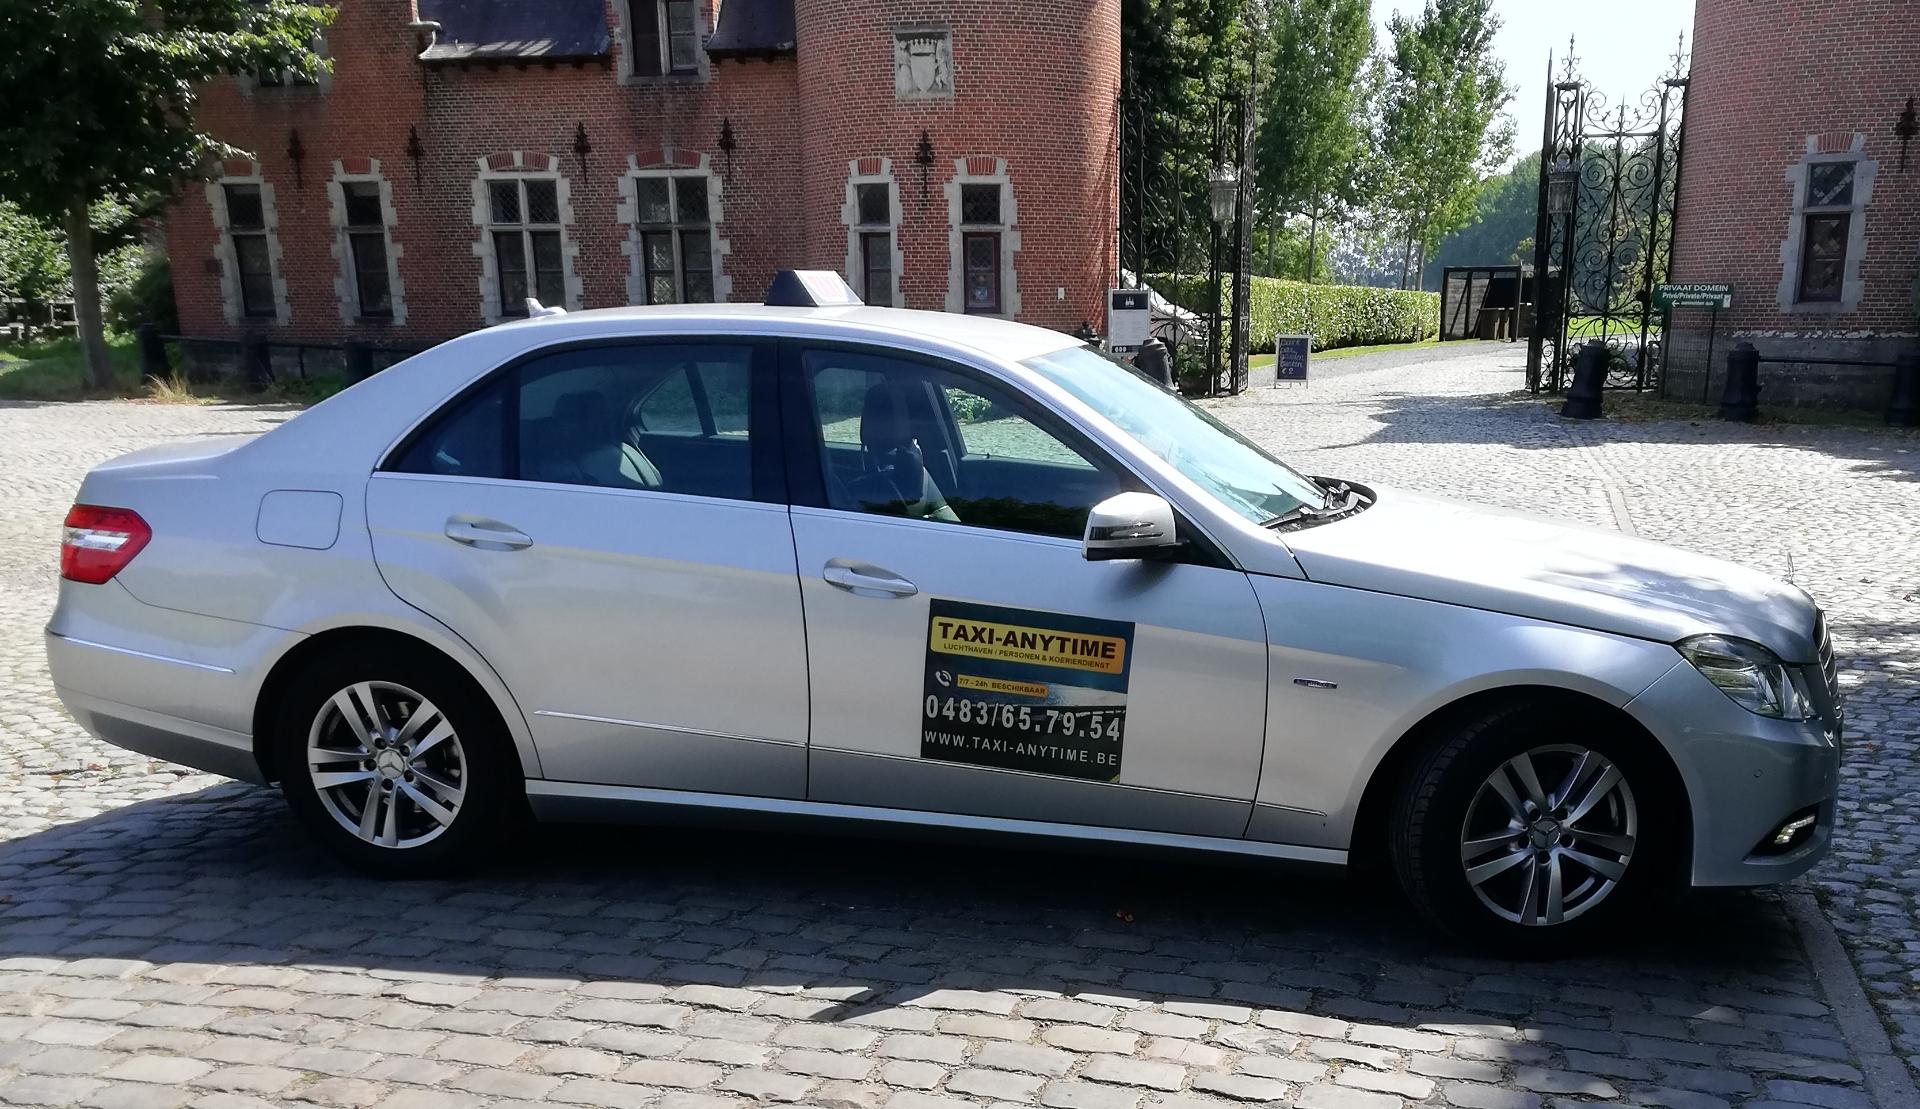 taxibedrijven Sint-Genesius-Rode/Rhode-Saint-Genèse Taxi-Anytime